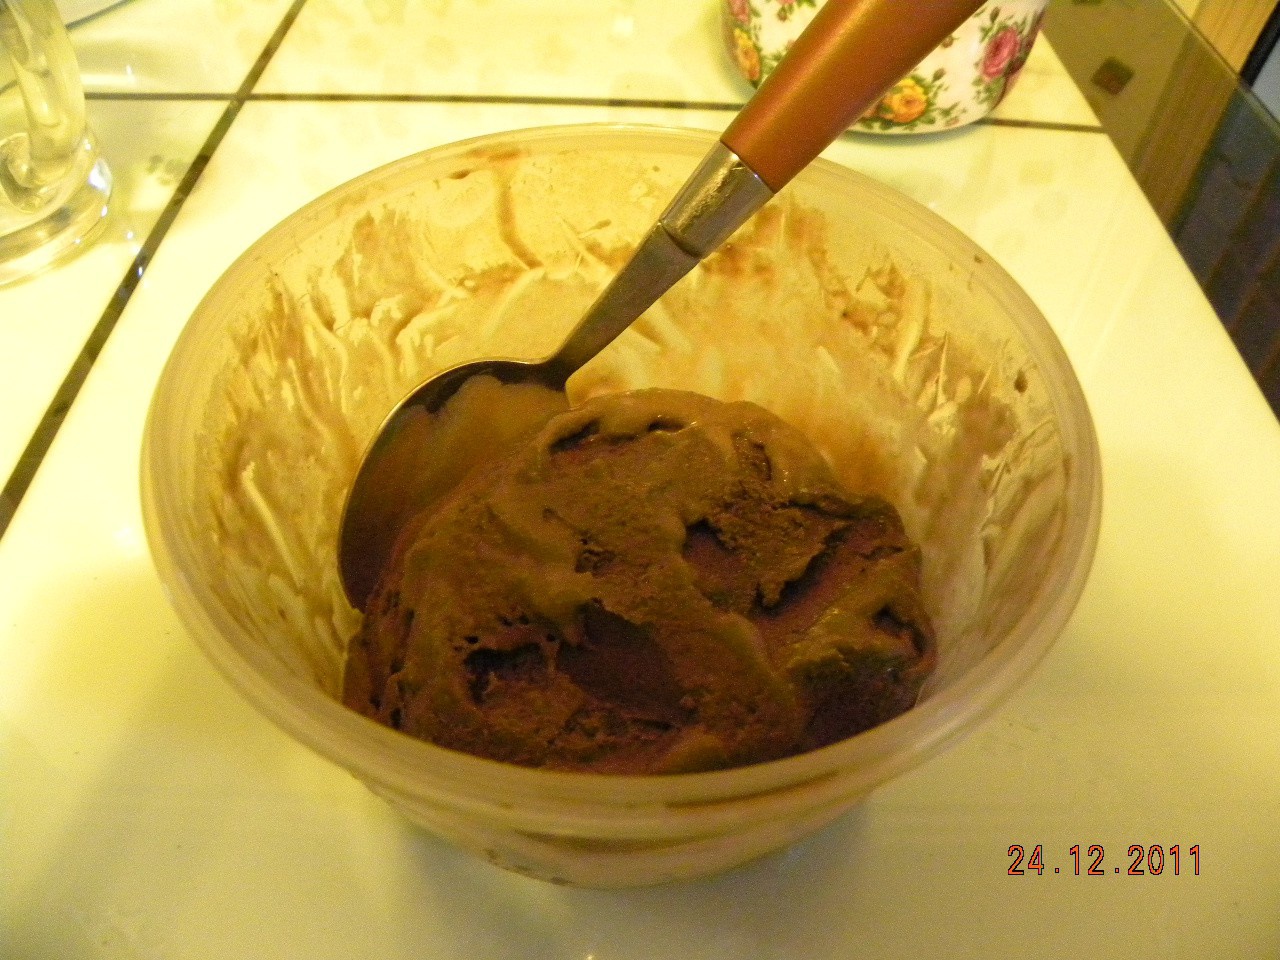 焦糖巧克力冰淇淋